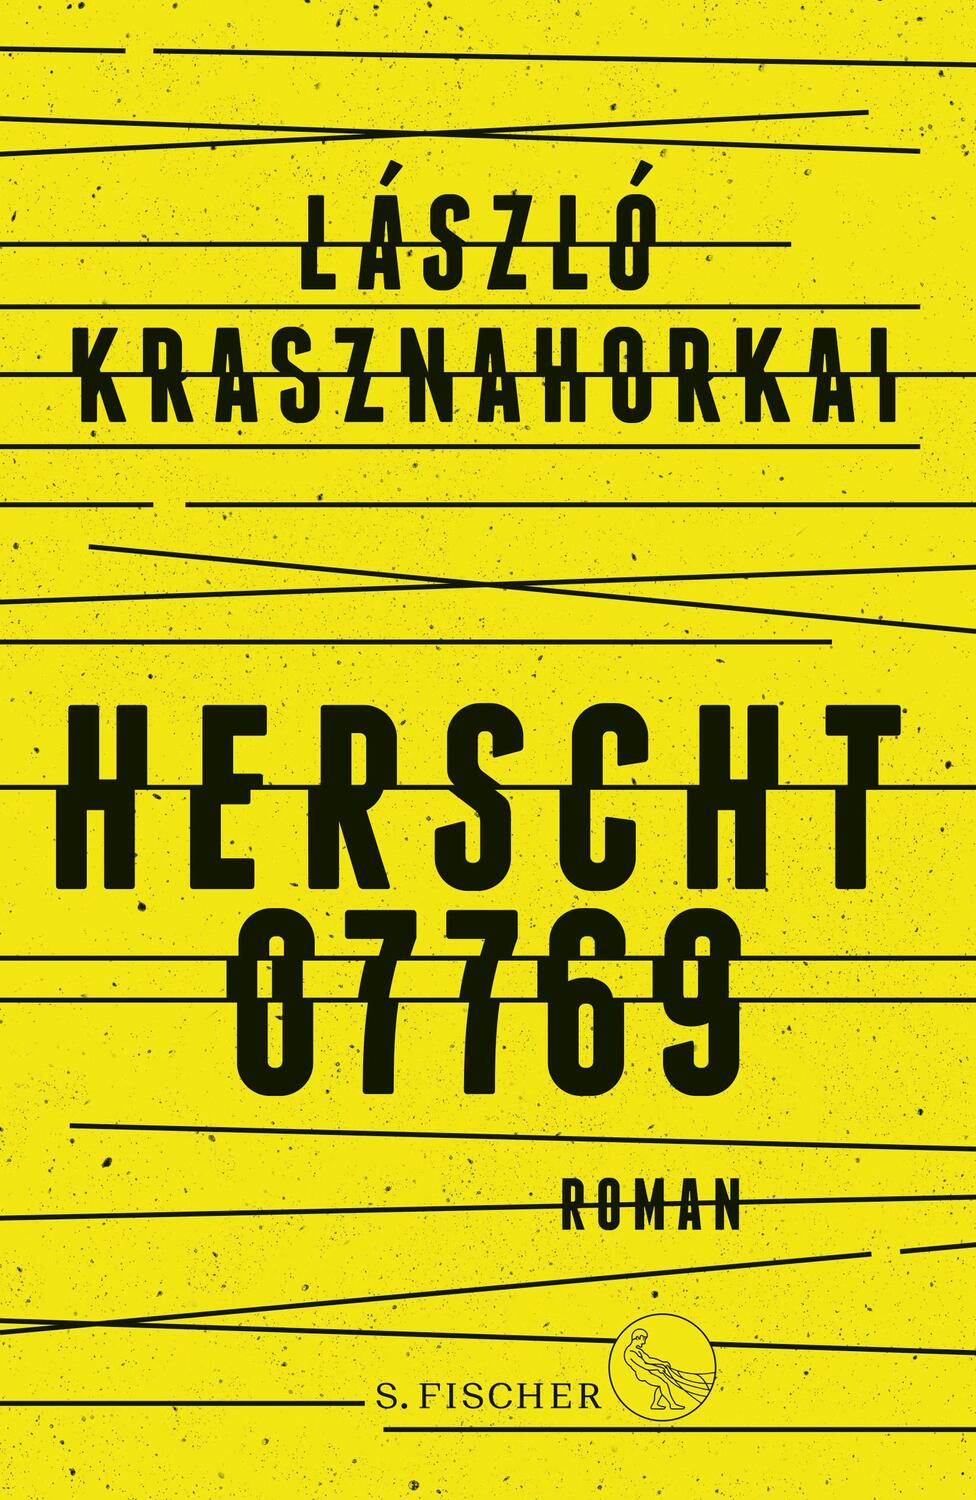 Herscht 07769 - Krasznahorkai, László